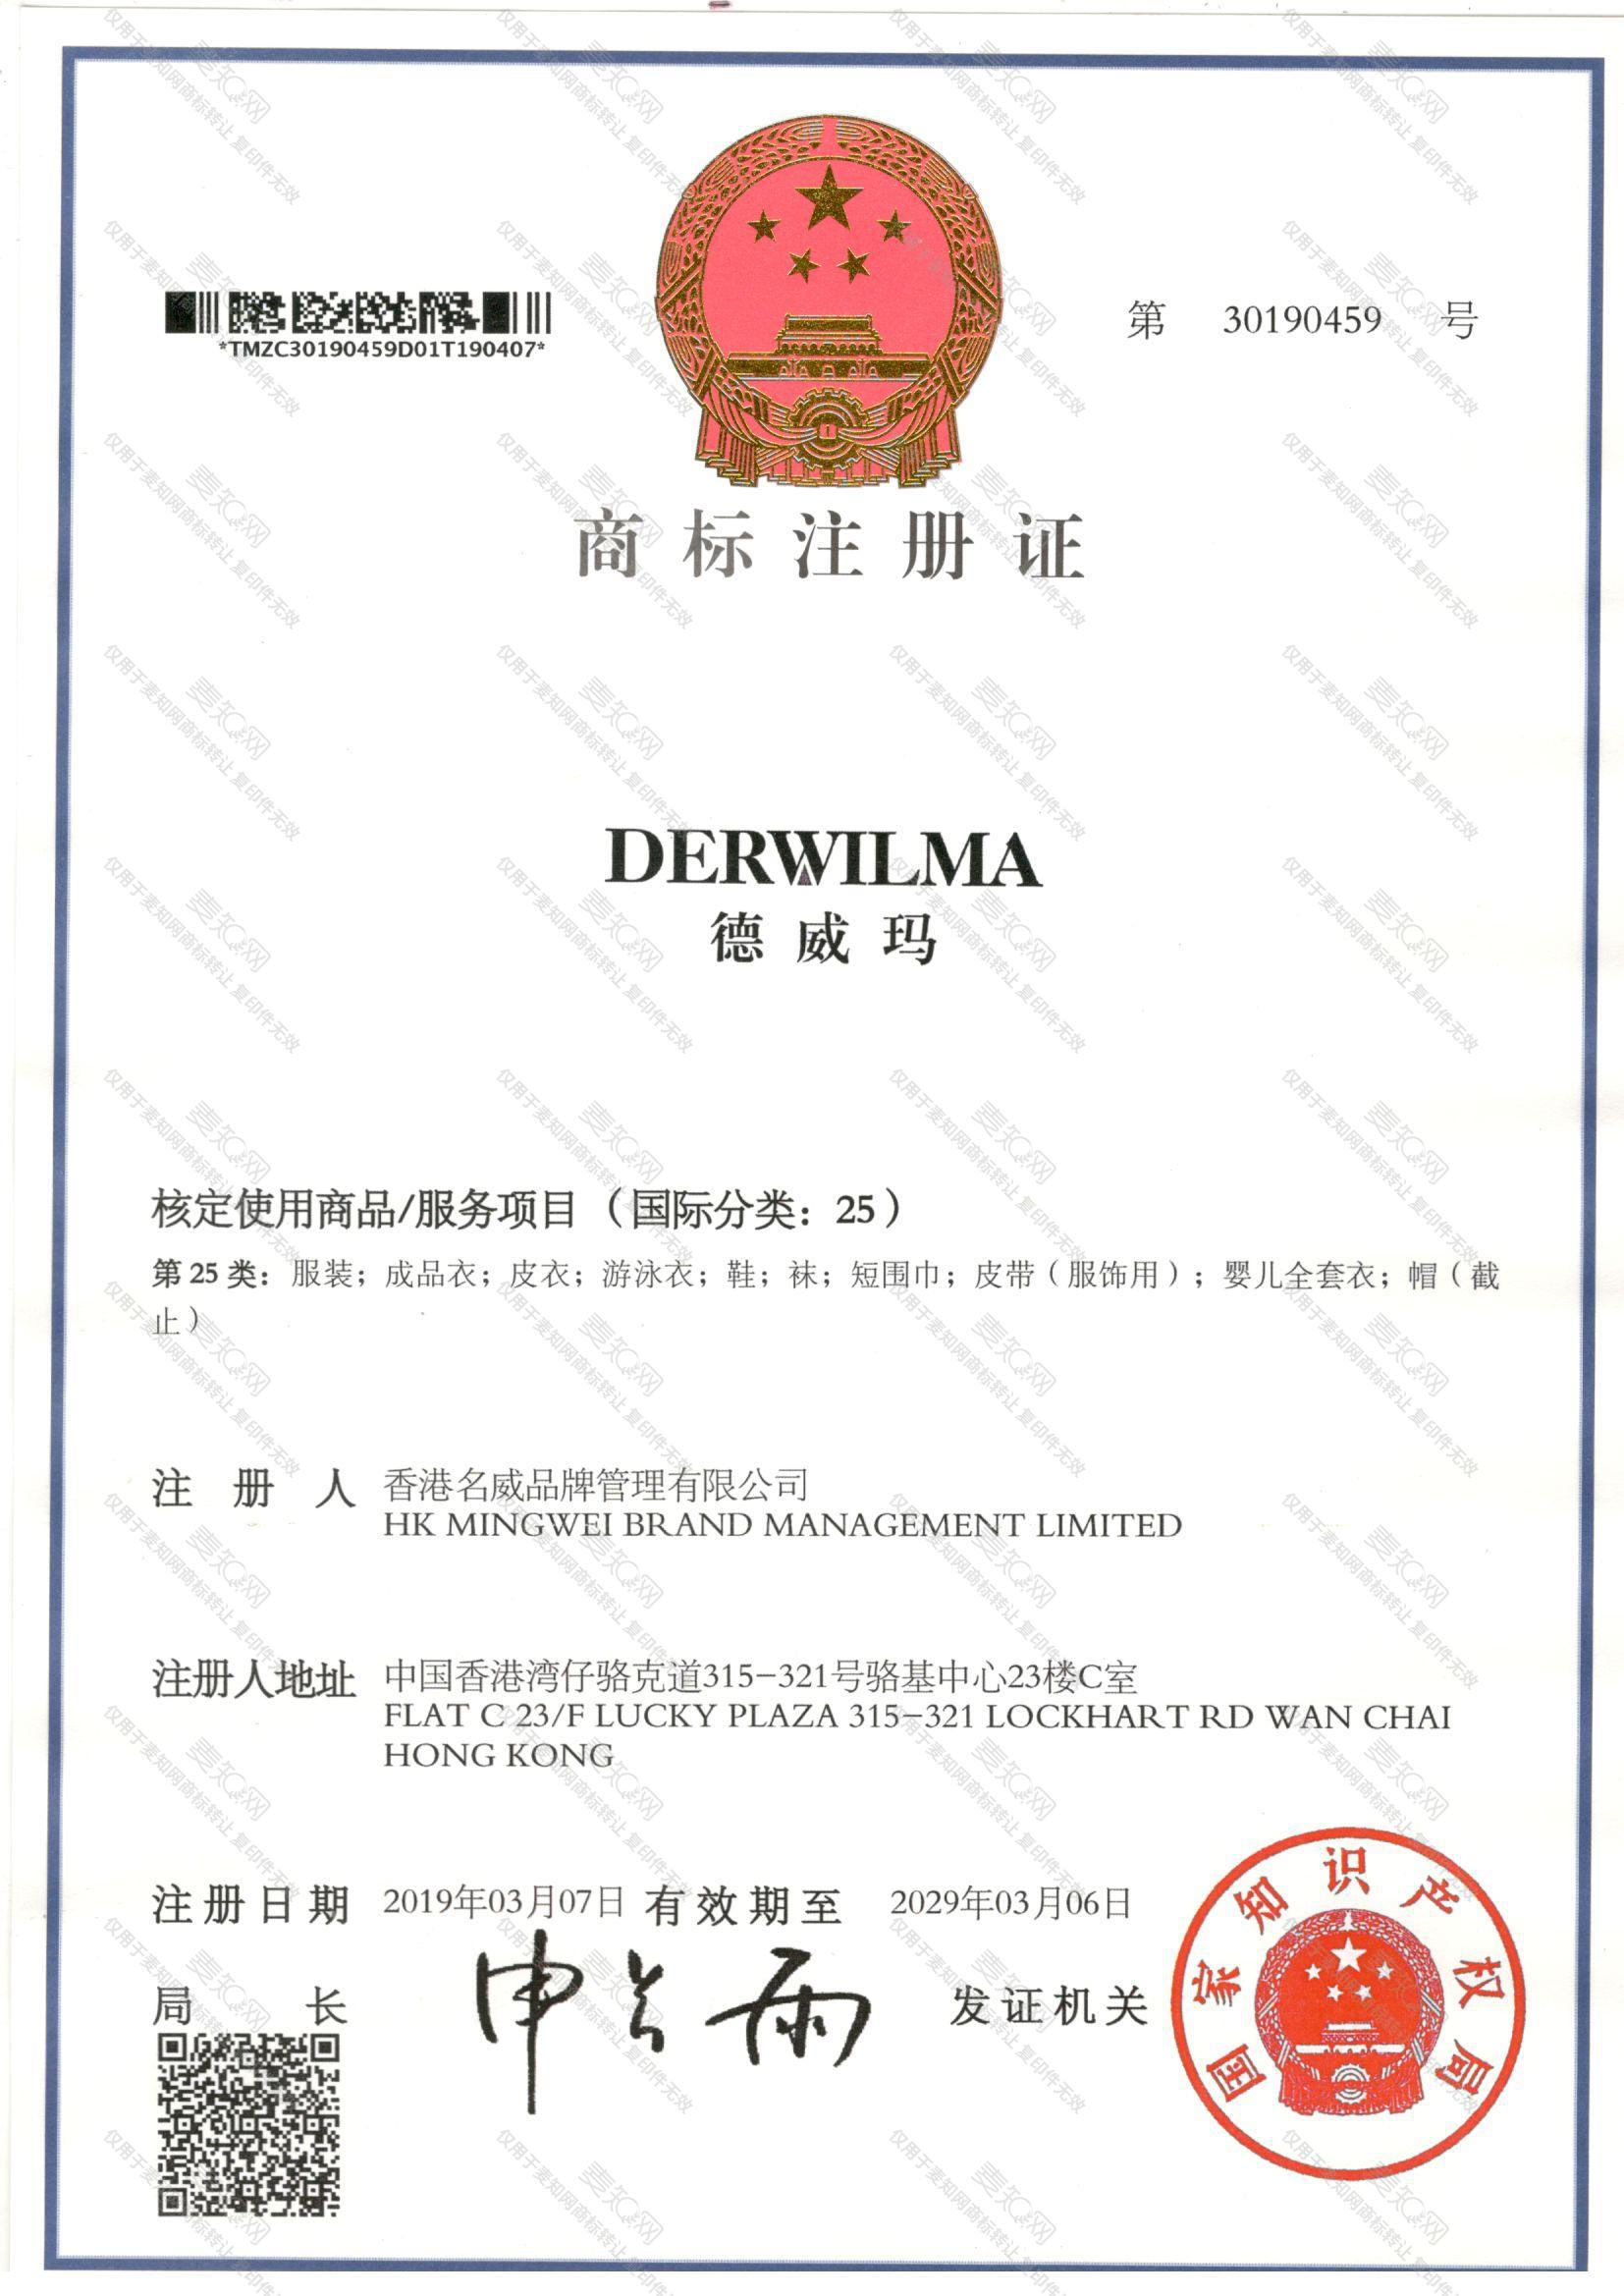 德威玛 DERWILMA注册证